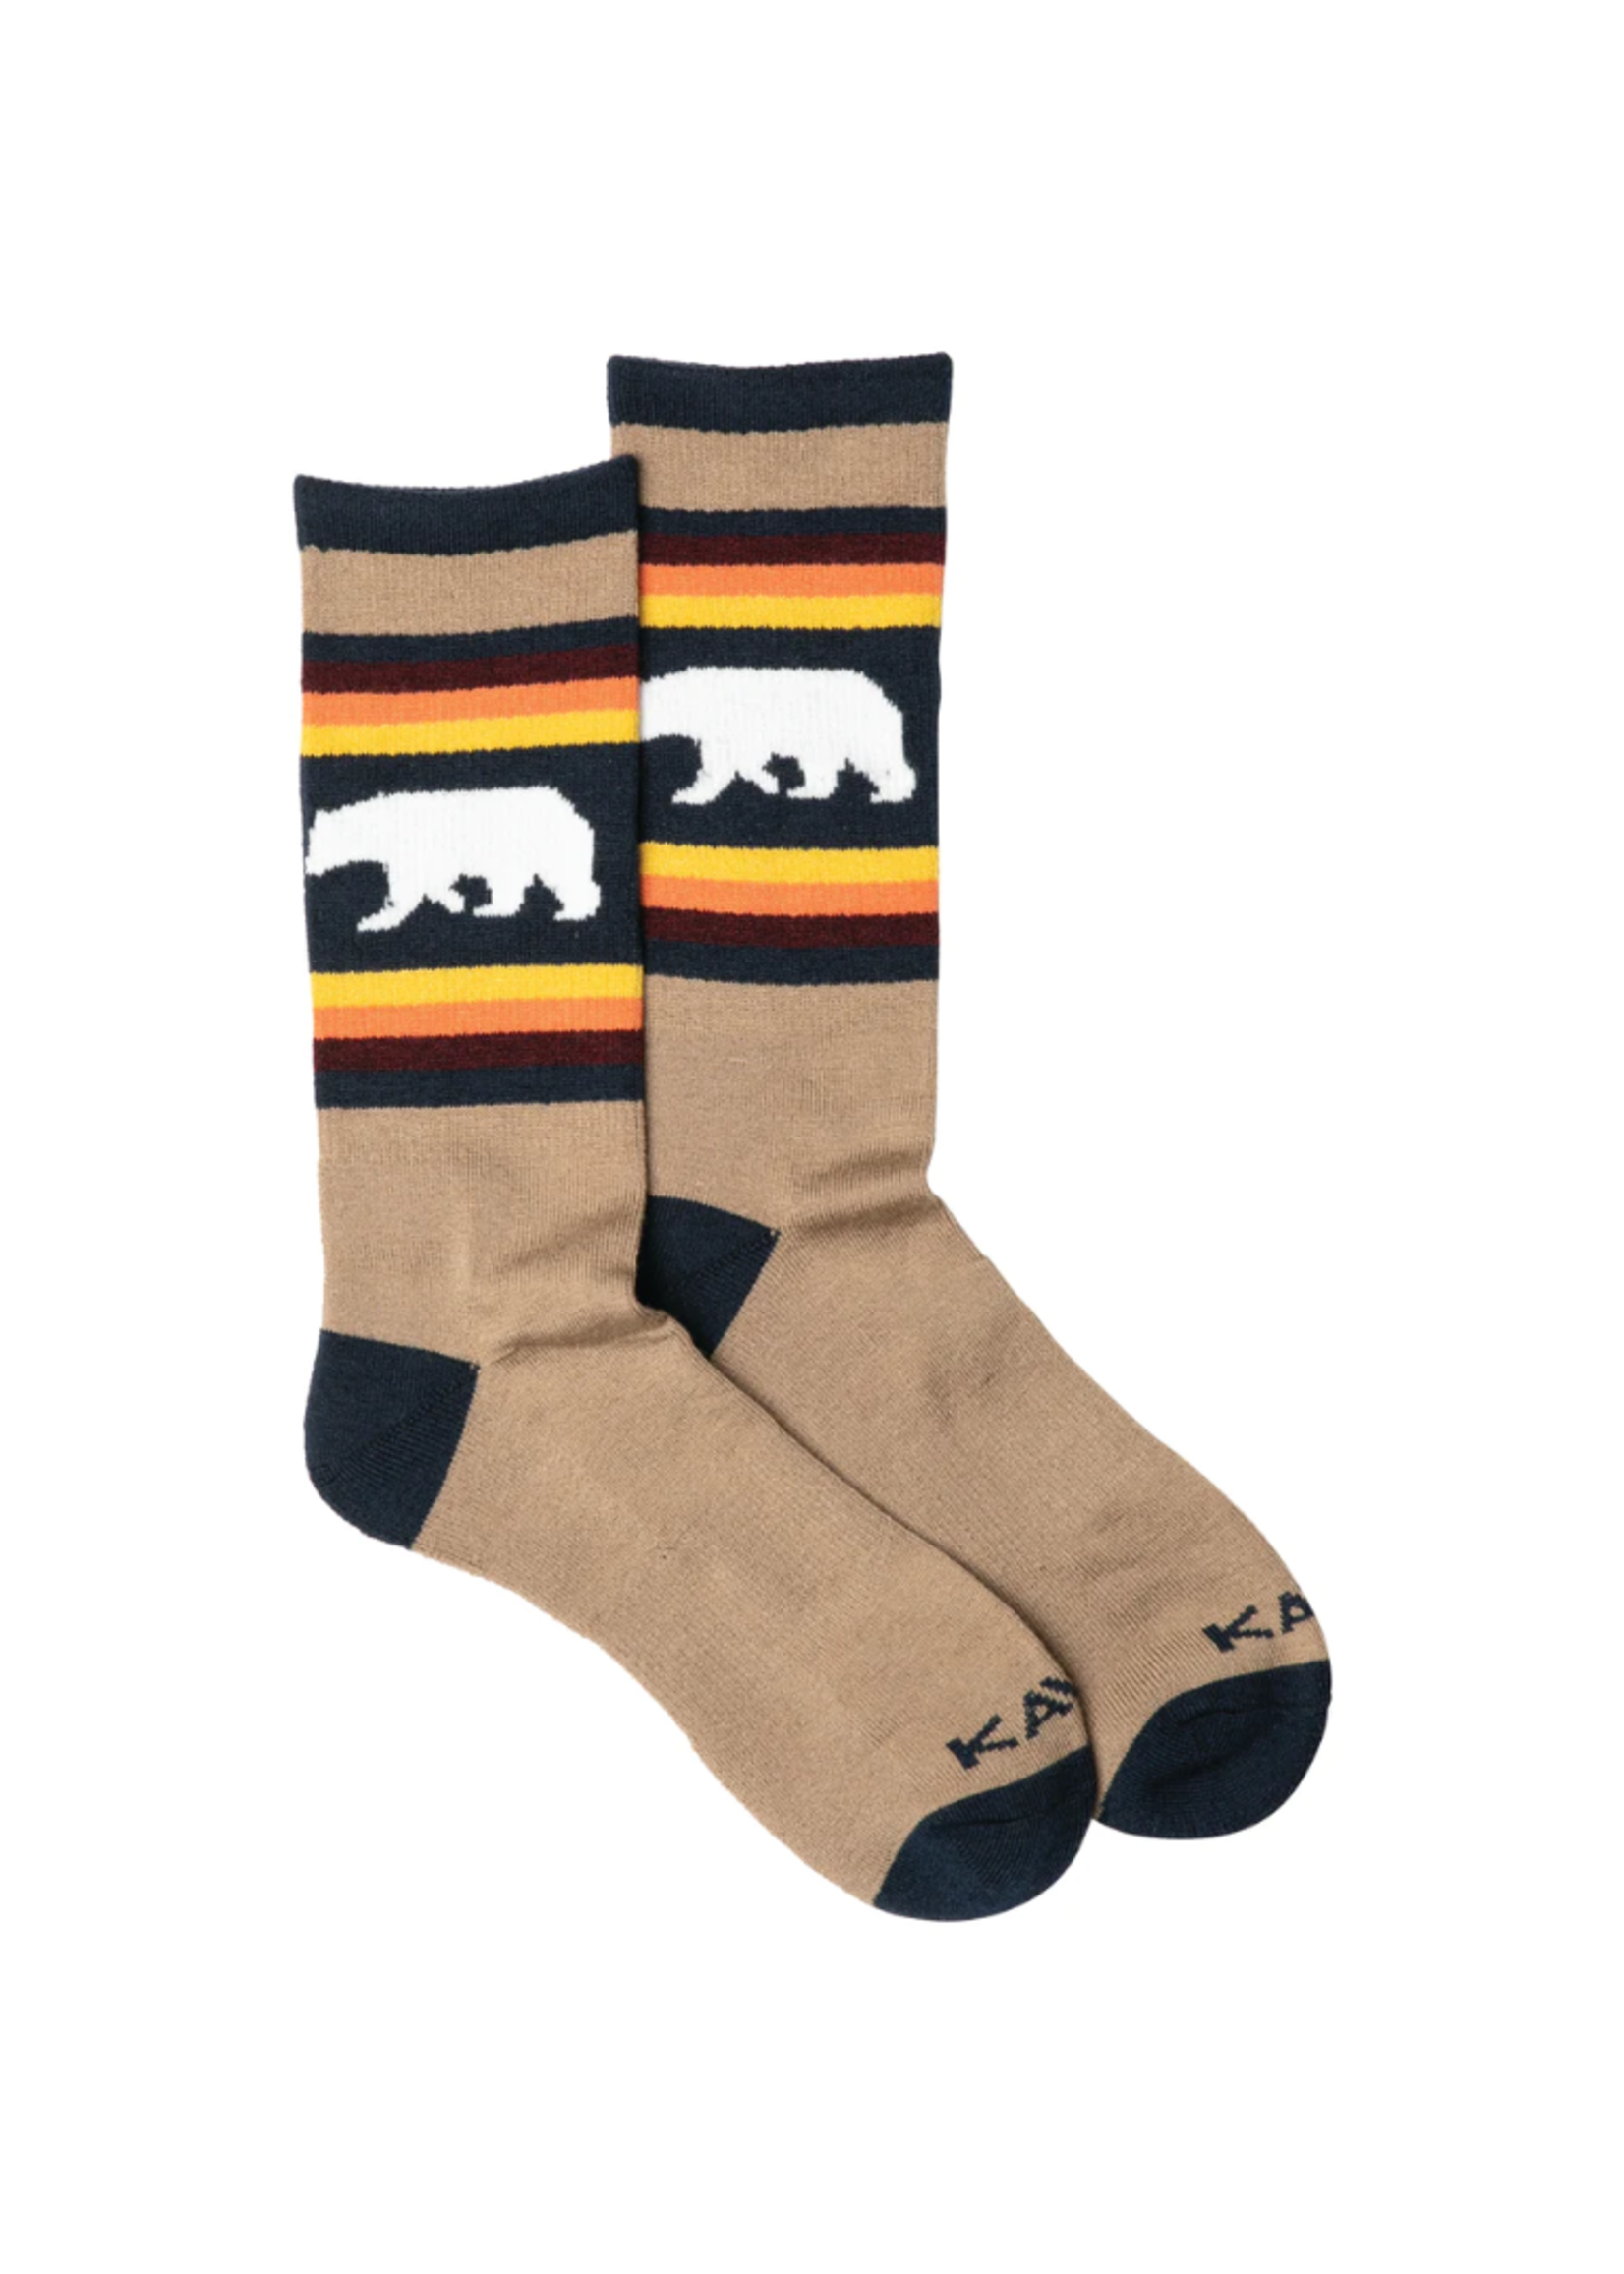 Kavu Kavu Moonwalk socks